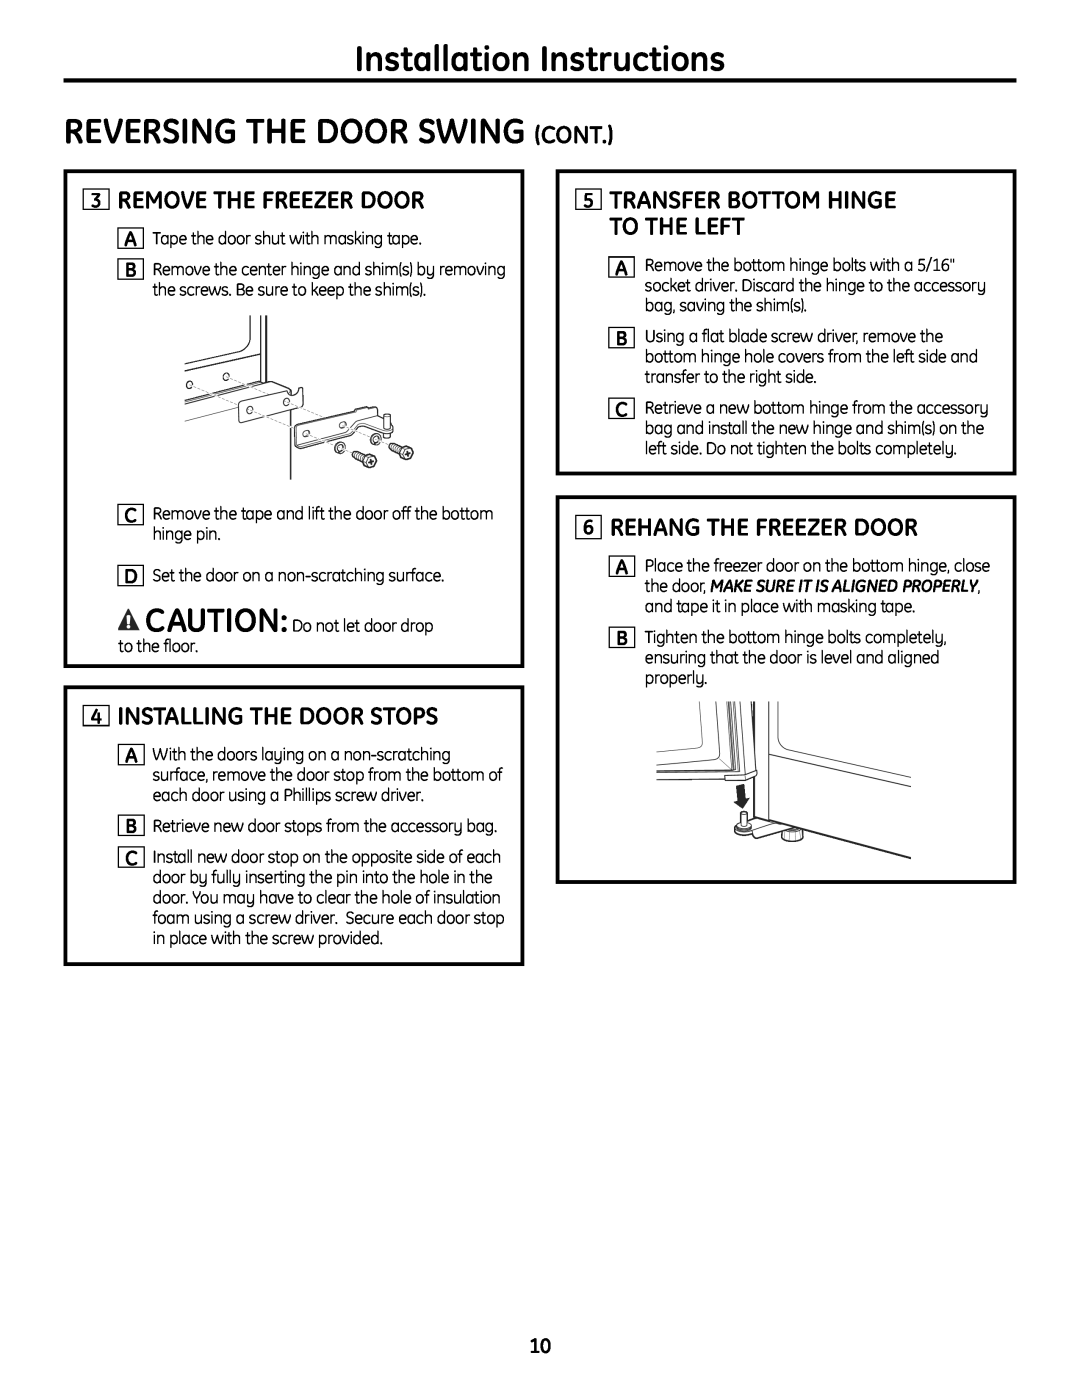 GE GBC12 Installation Instructions REVERSING THE DOOR SWING CONT, Remove The Freezer Door, Installing The Door Stops 